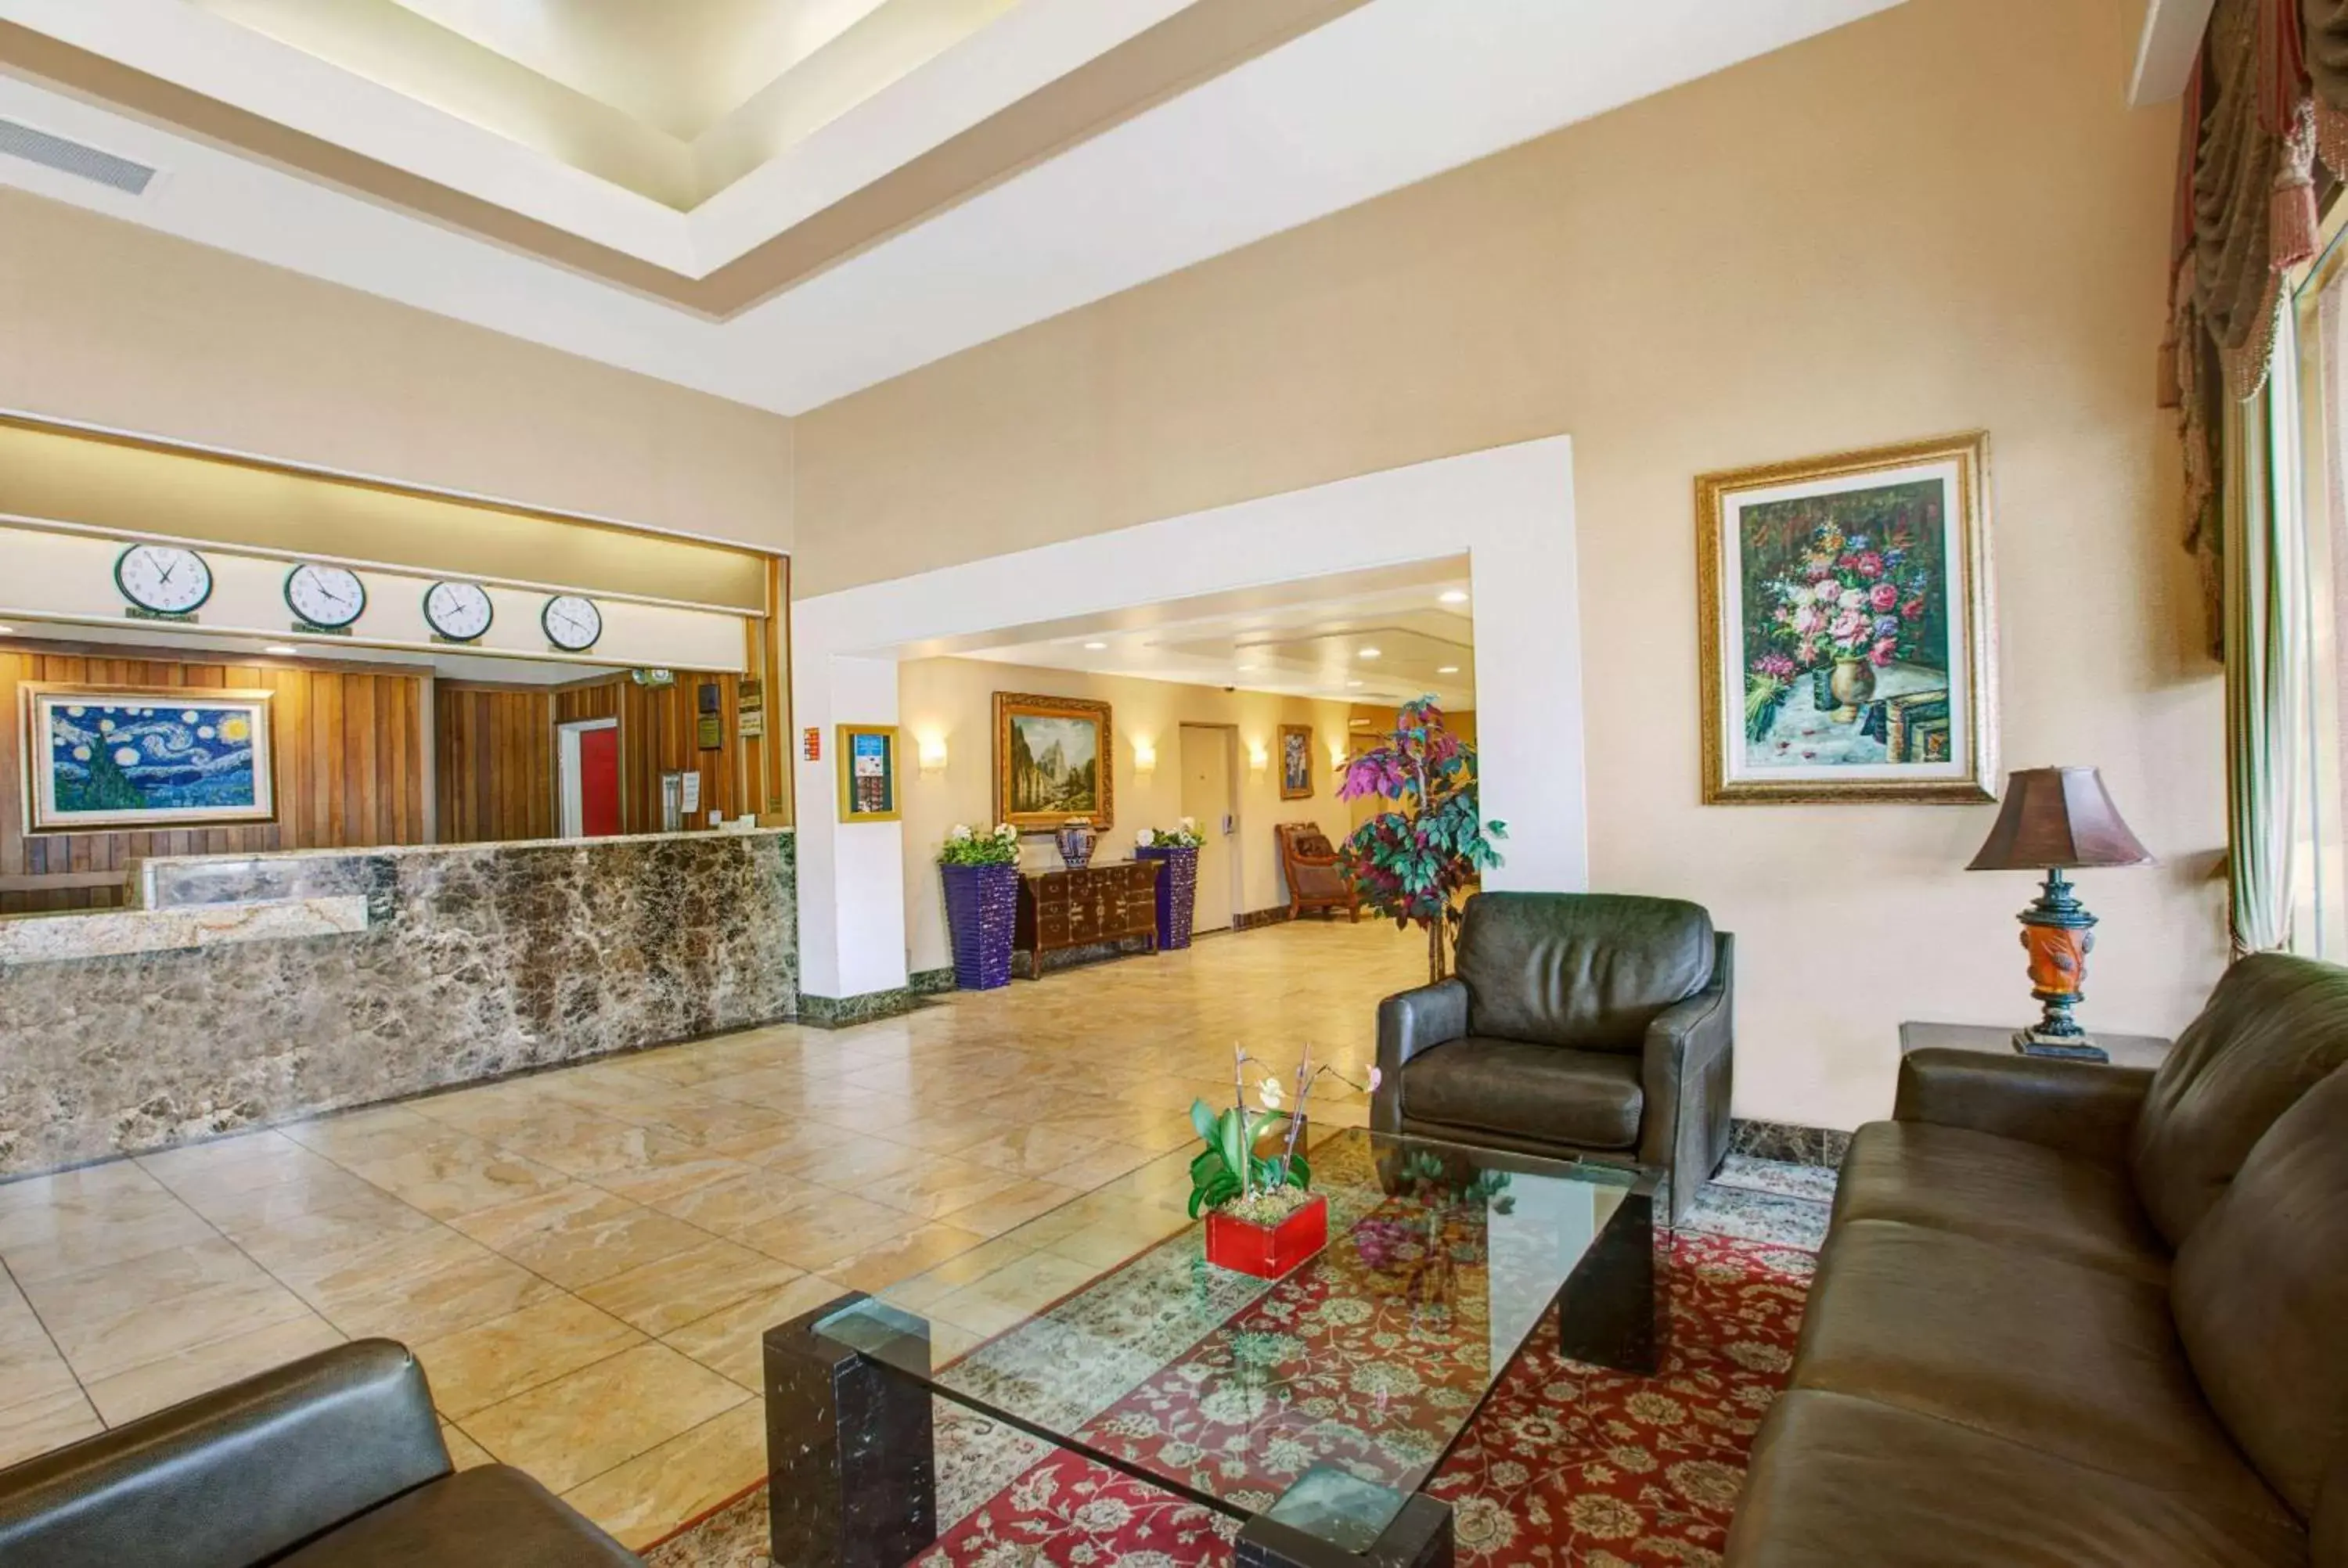 Lobby or reception, Lobby/Reception in Ramada by Wyndham Hawthorne/LAX